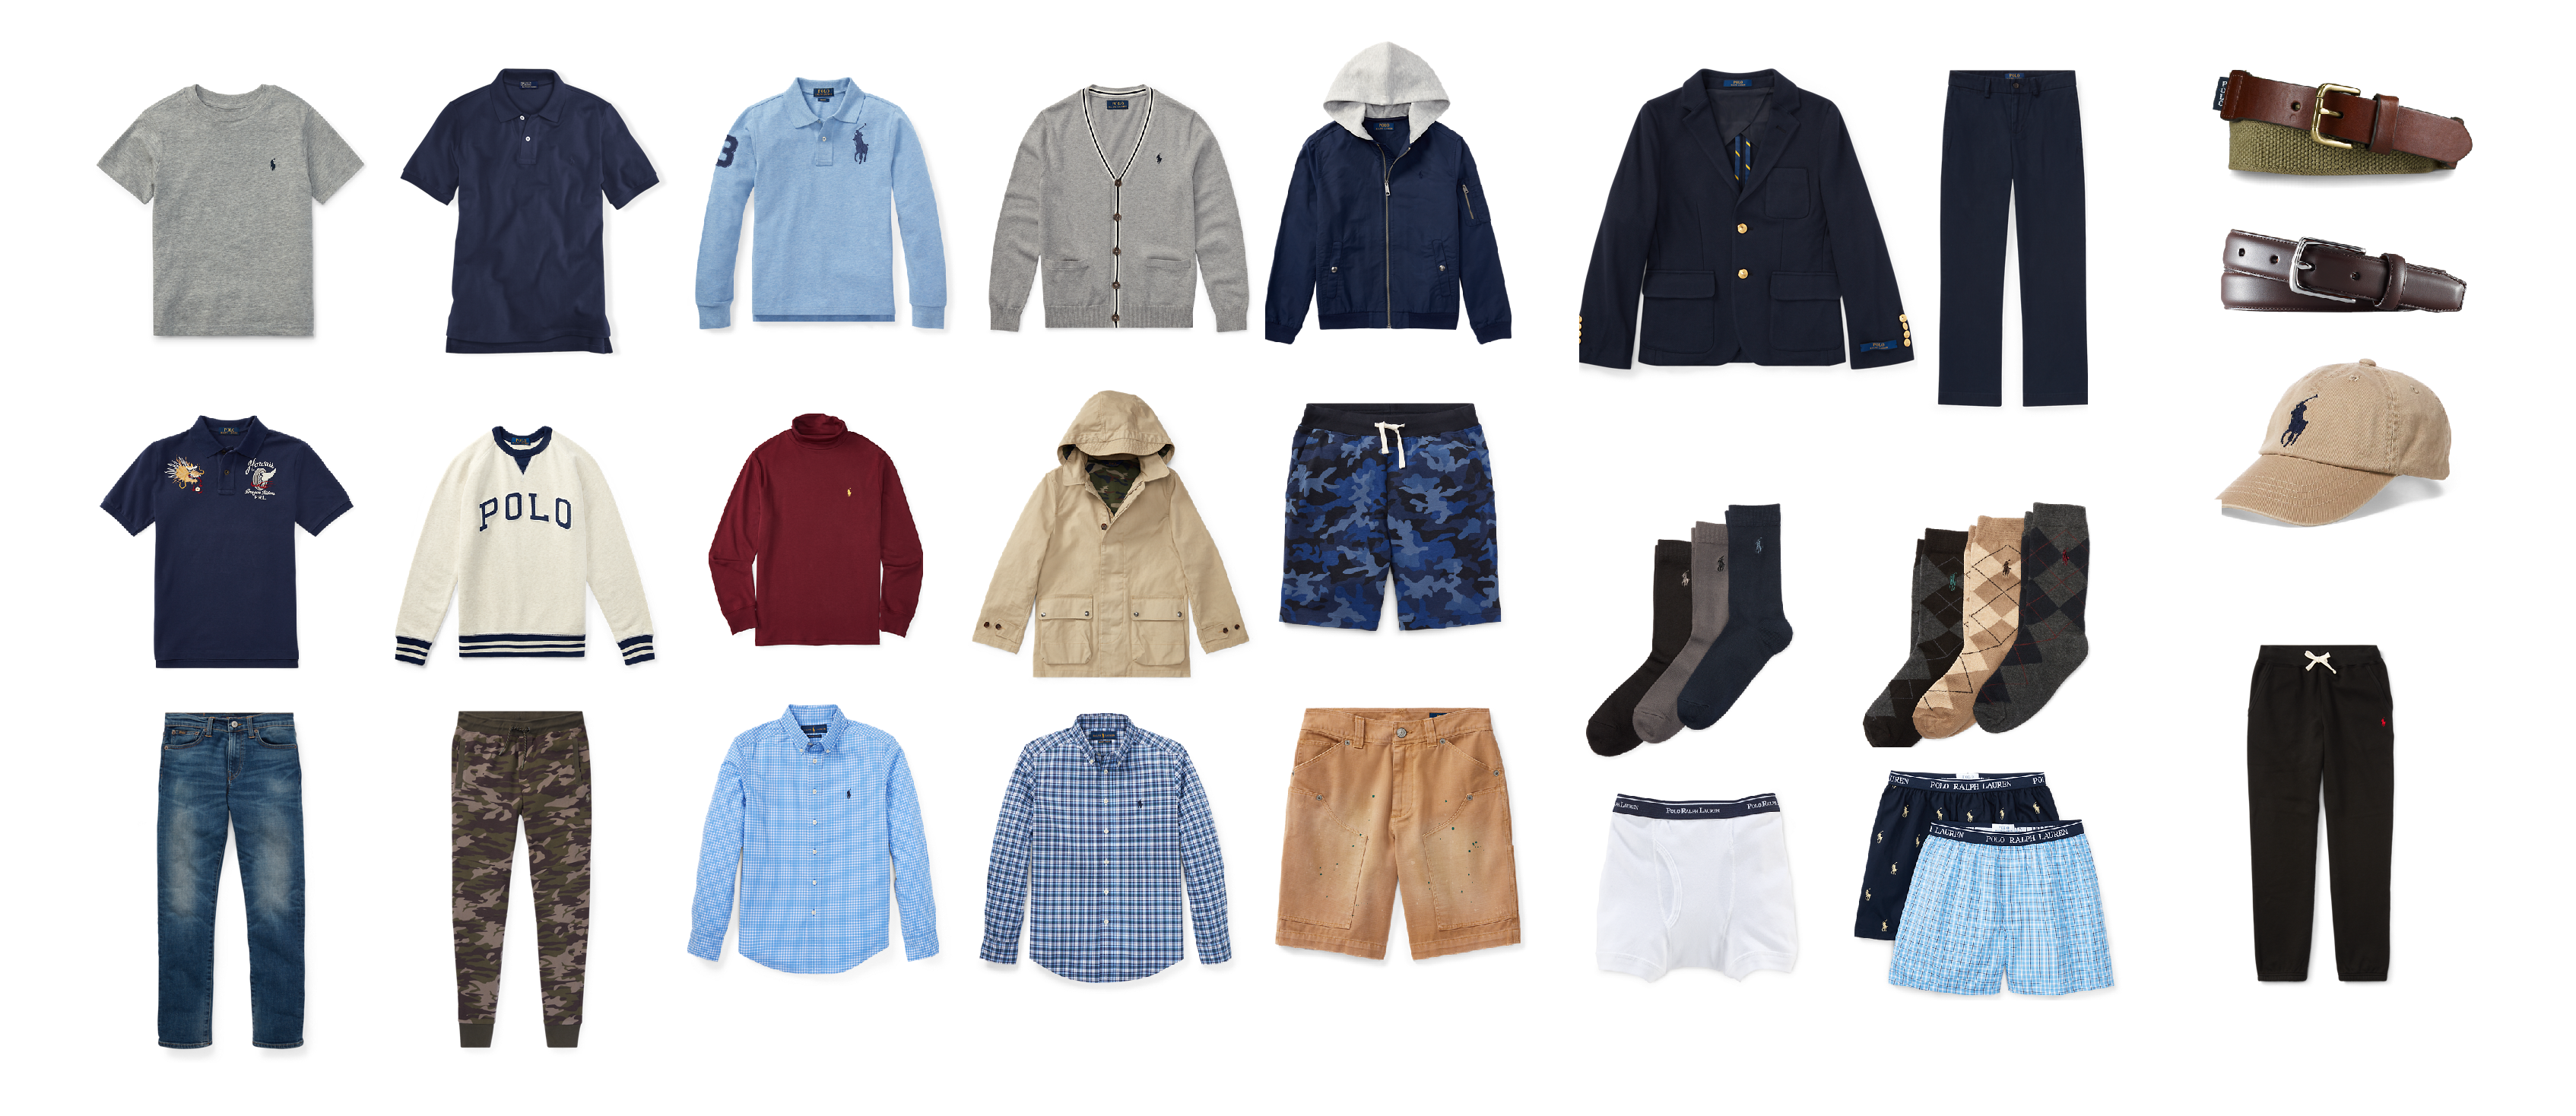 Одежда для подростков, как ее правильно выбирать и сочетать стиль